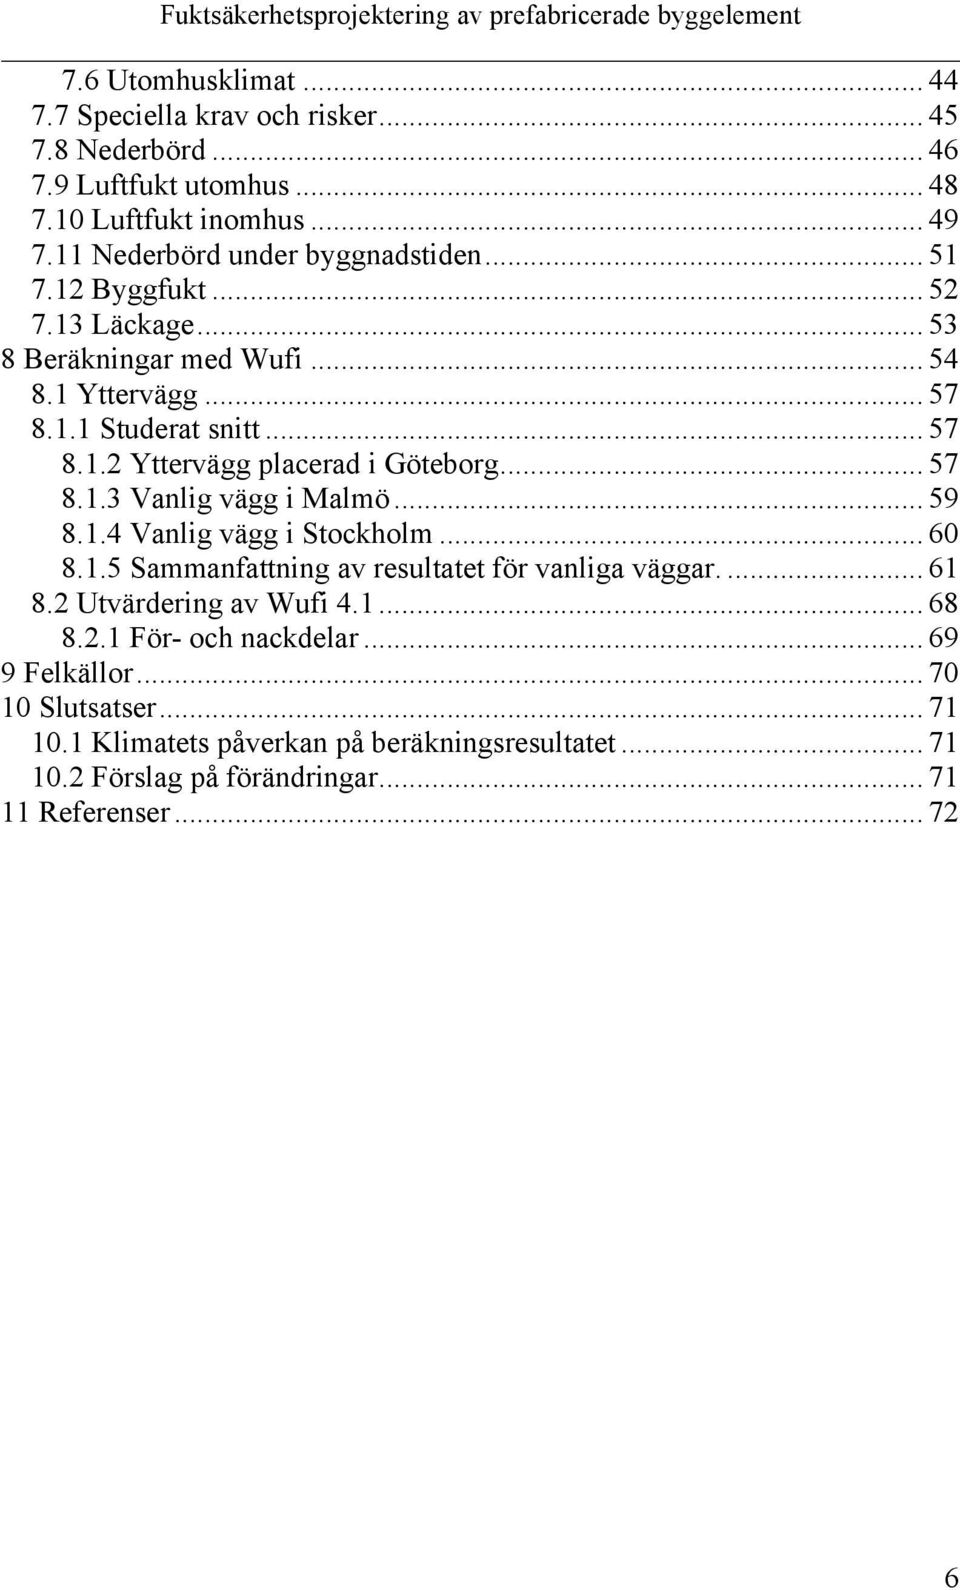 .. 57 8.1.3 Vanlig vägg i Malmö... 59 8.1.4 Vanlig vägg i Stockholm... 60 8.1.5 Sammanfattning av resultatet för vanliga väggar.... 61 8.2 Utvärdering av Wufi 4.1... 68 8.